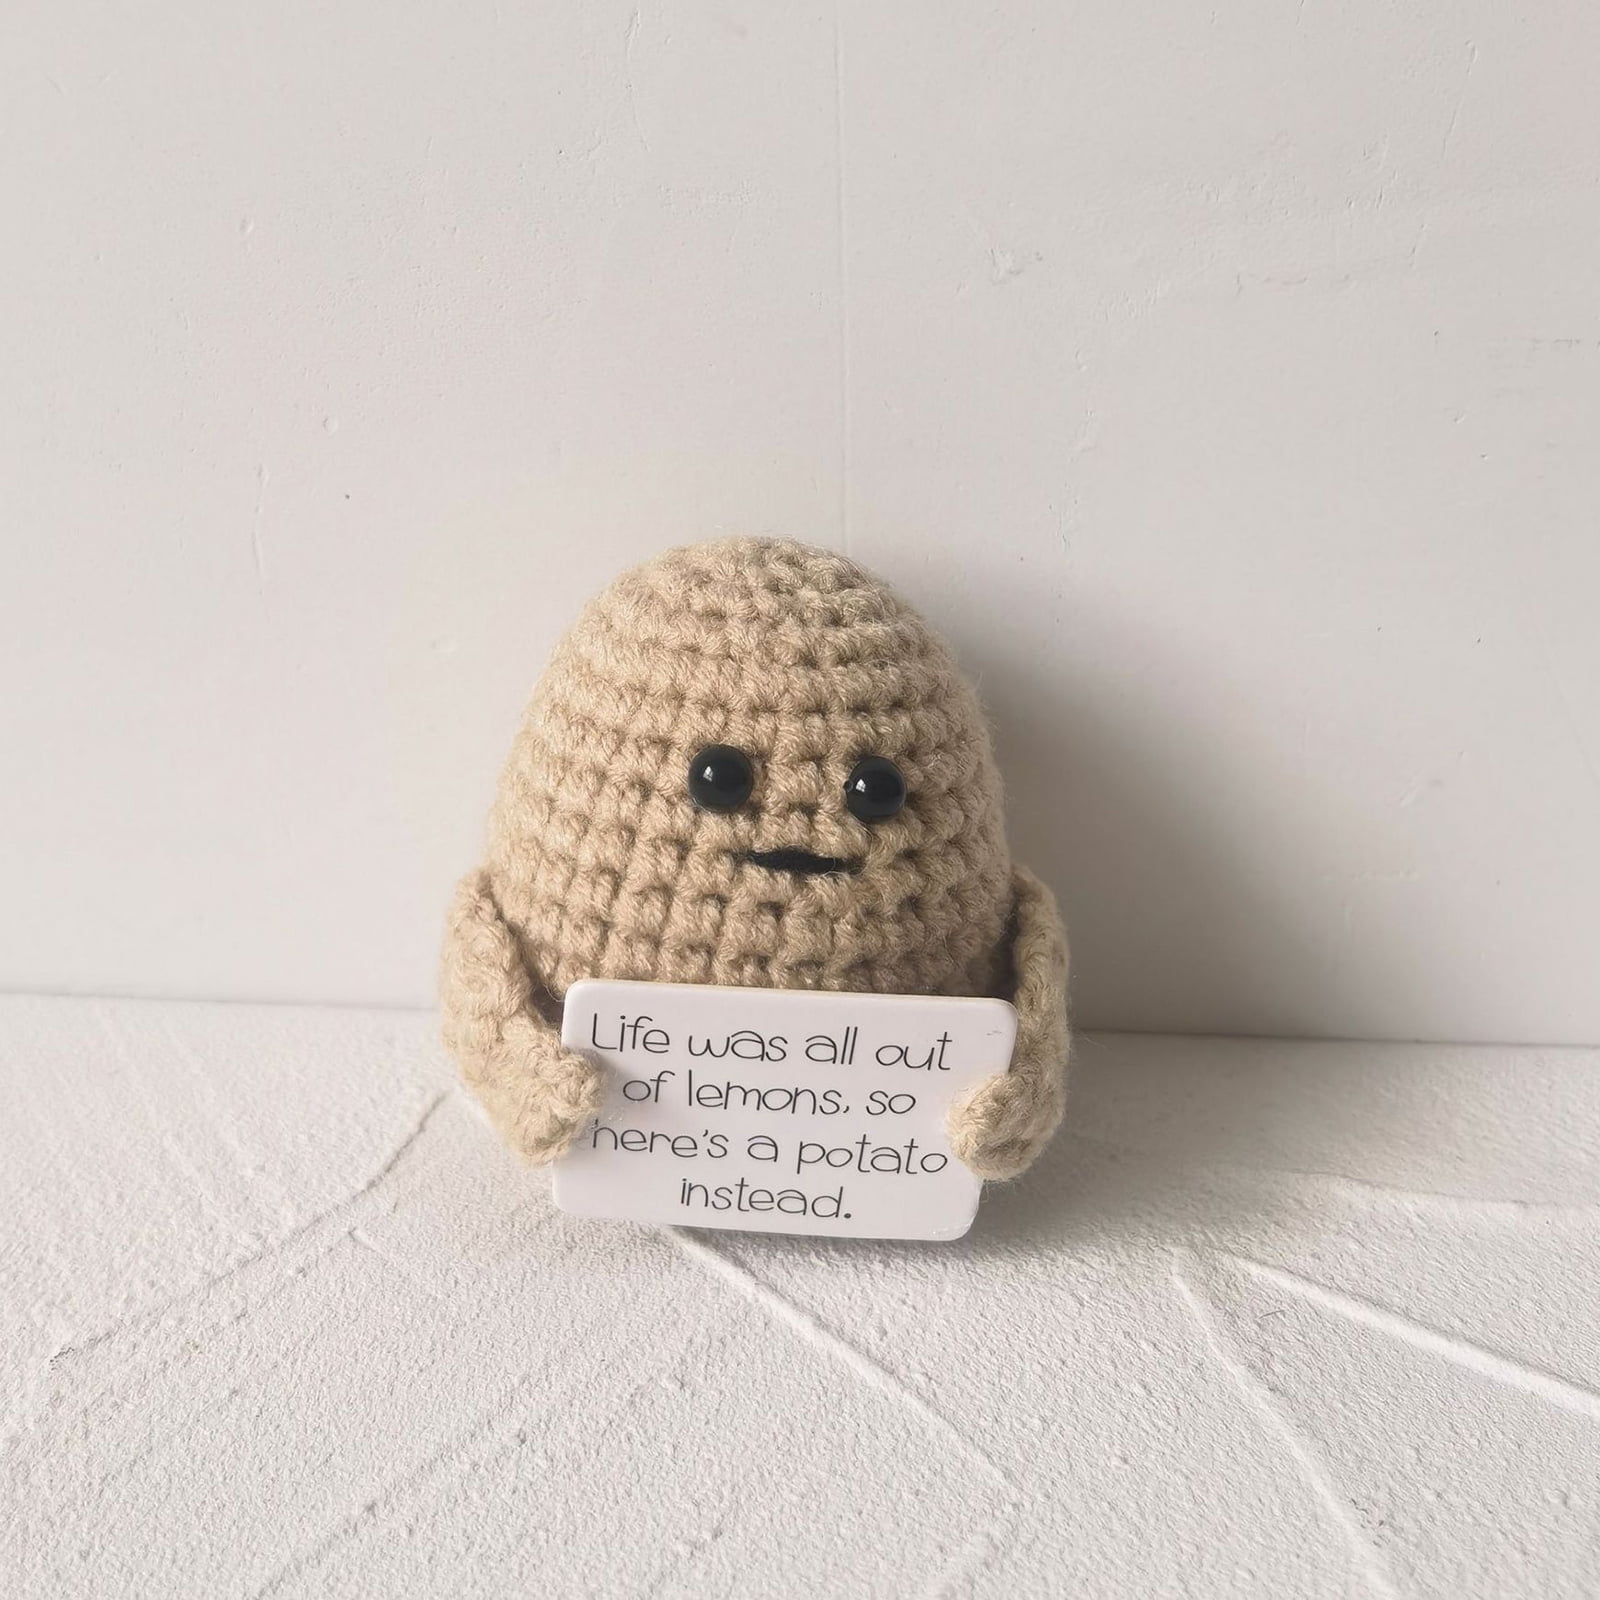 Koupit Handmade Knitting Potato Doll Wool Emotional Support Potato Doll  Funny Positive Potato Doll Home za dobrou cenu — doprava zdarma, skutečné  recenze s fotkami — Joom